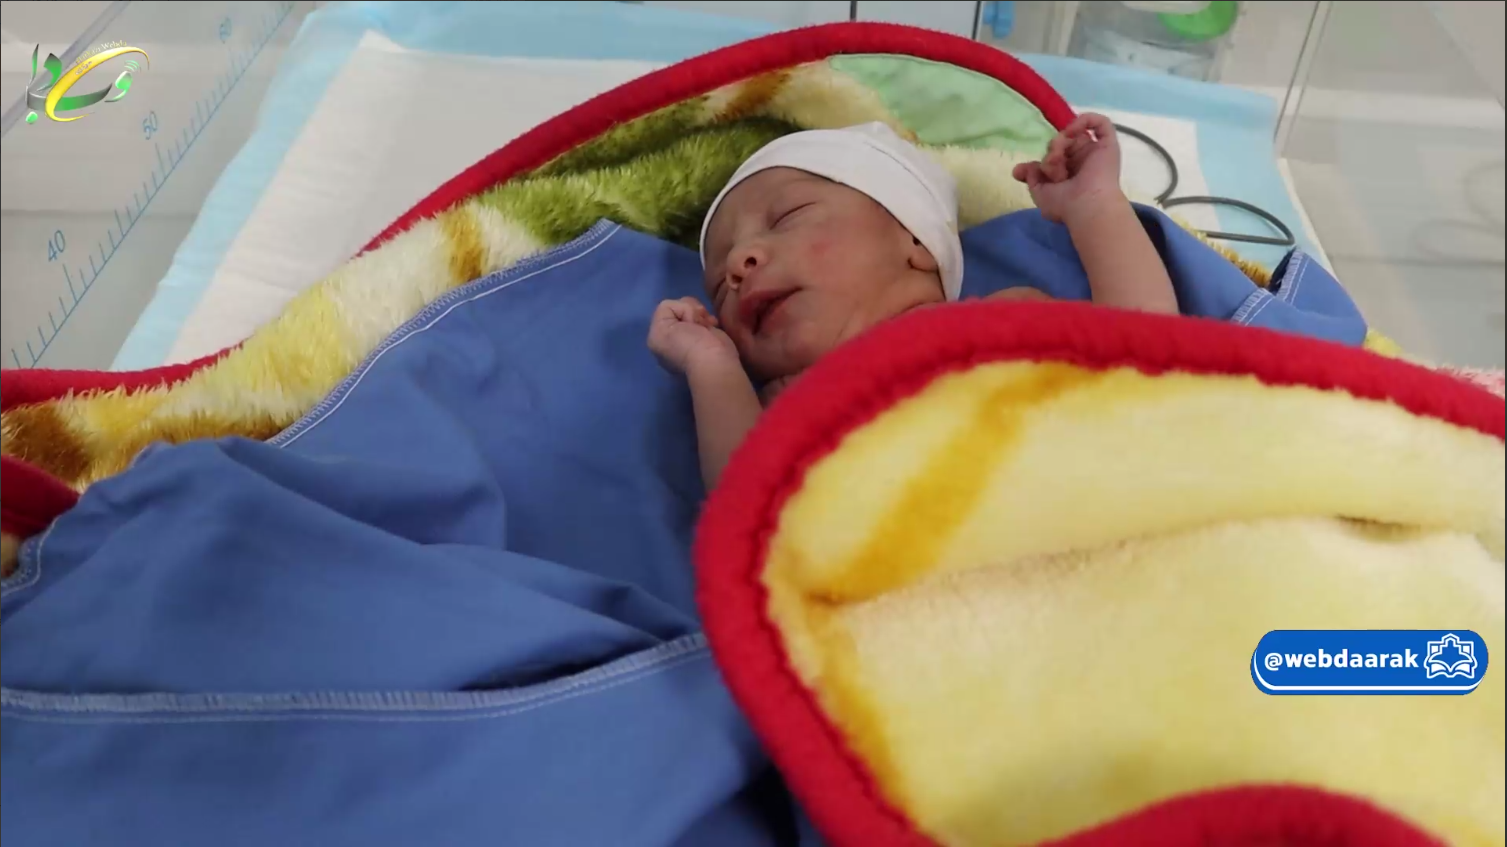 صدای گریه نوزاد در بیمارستان فوق تخصصی زنان و زایمان سینا رضایی آشتیانی، طنین انداز شد +فیلم